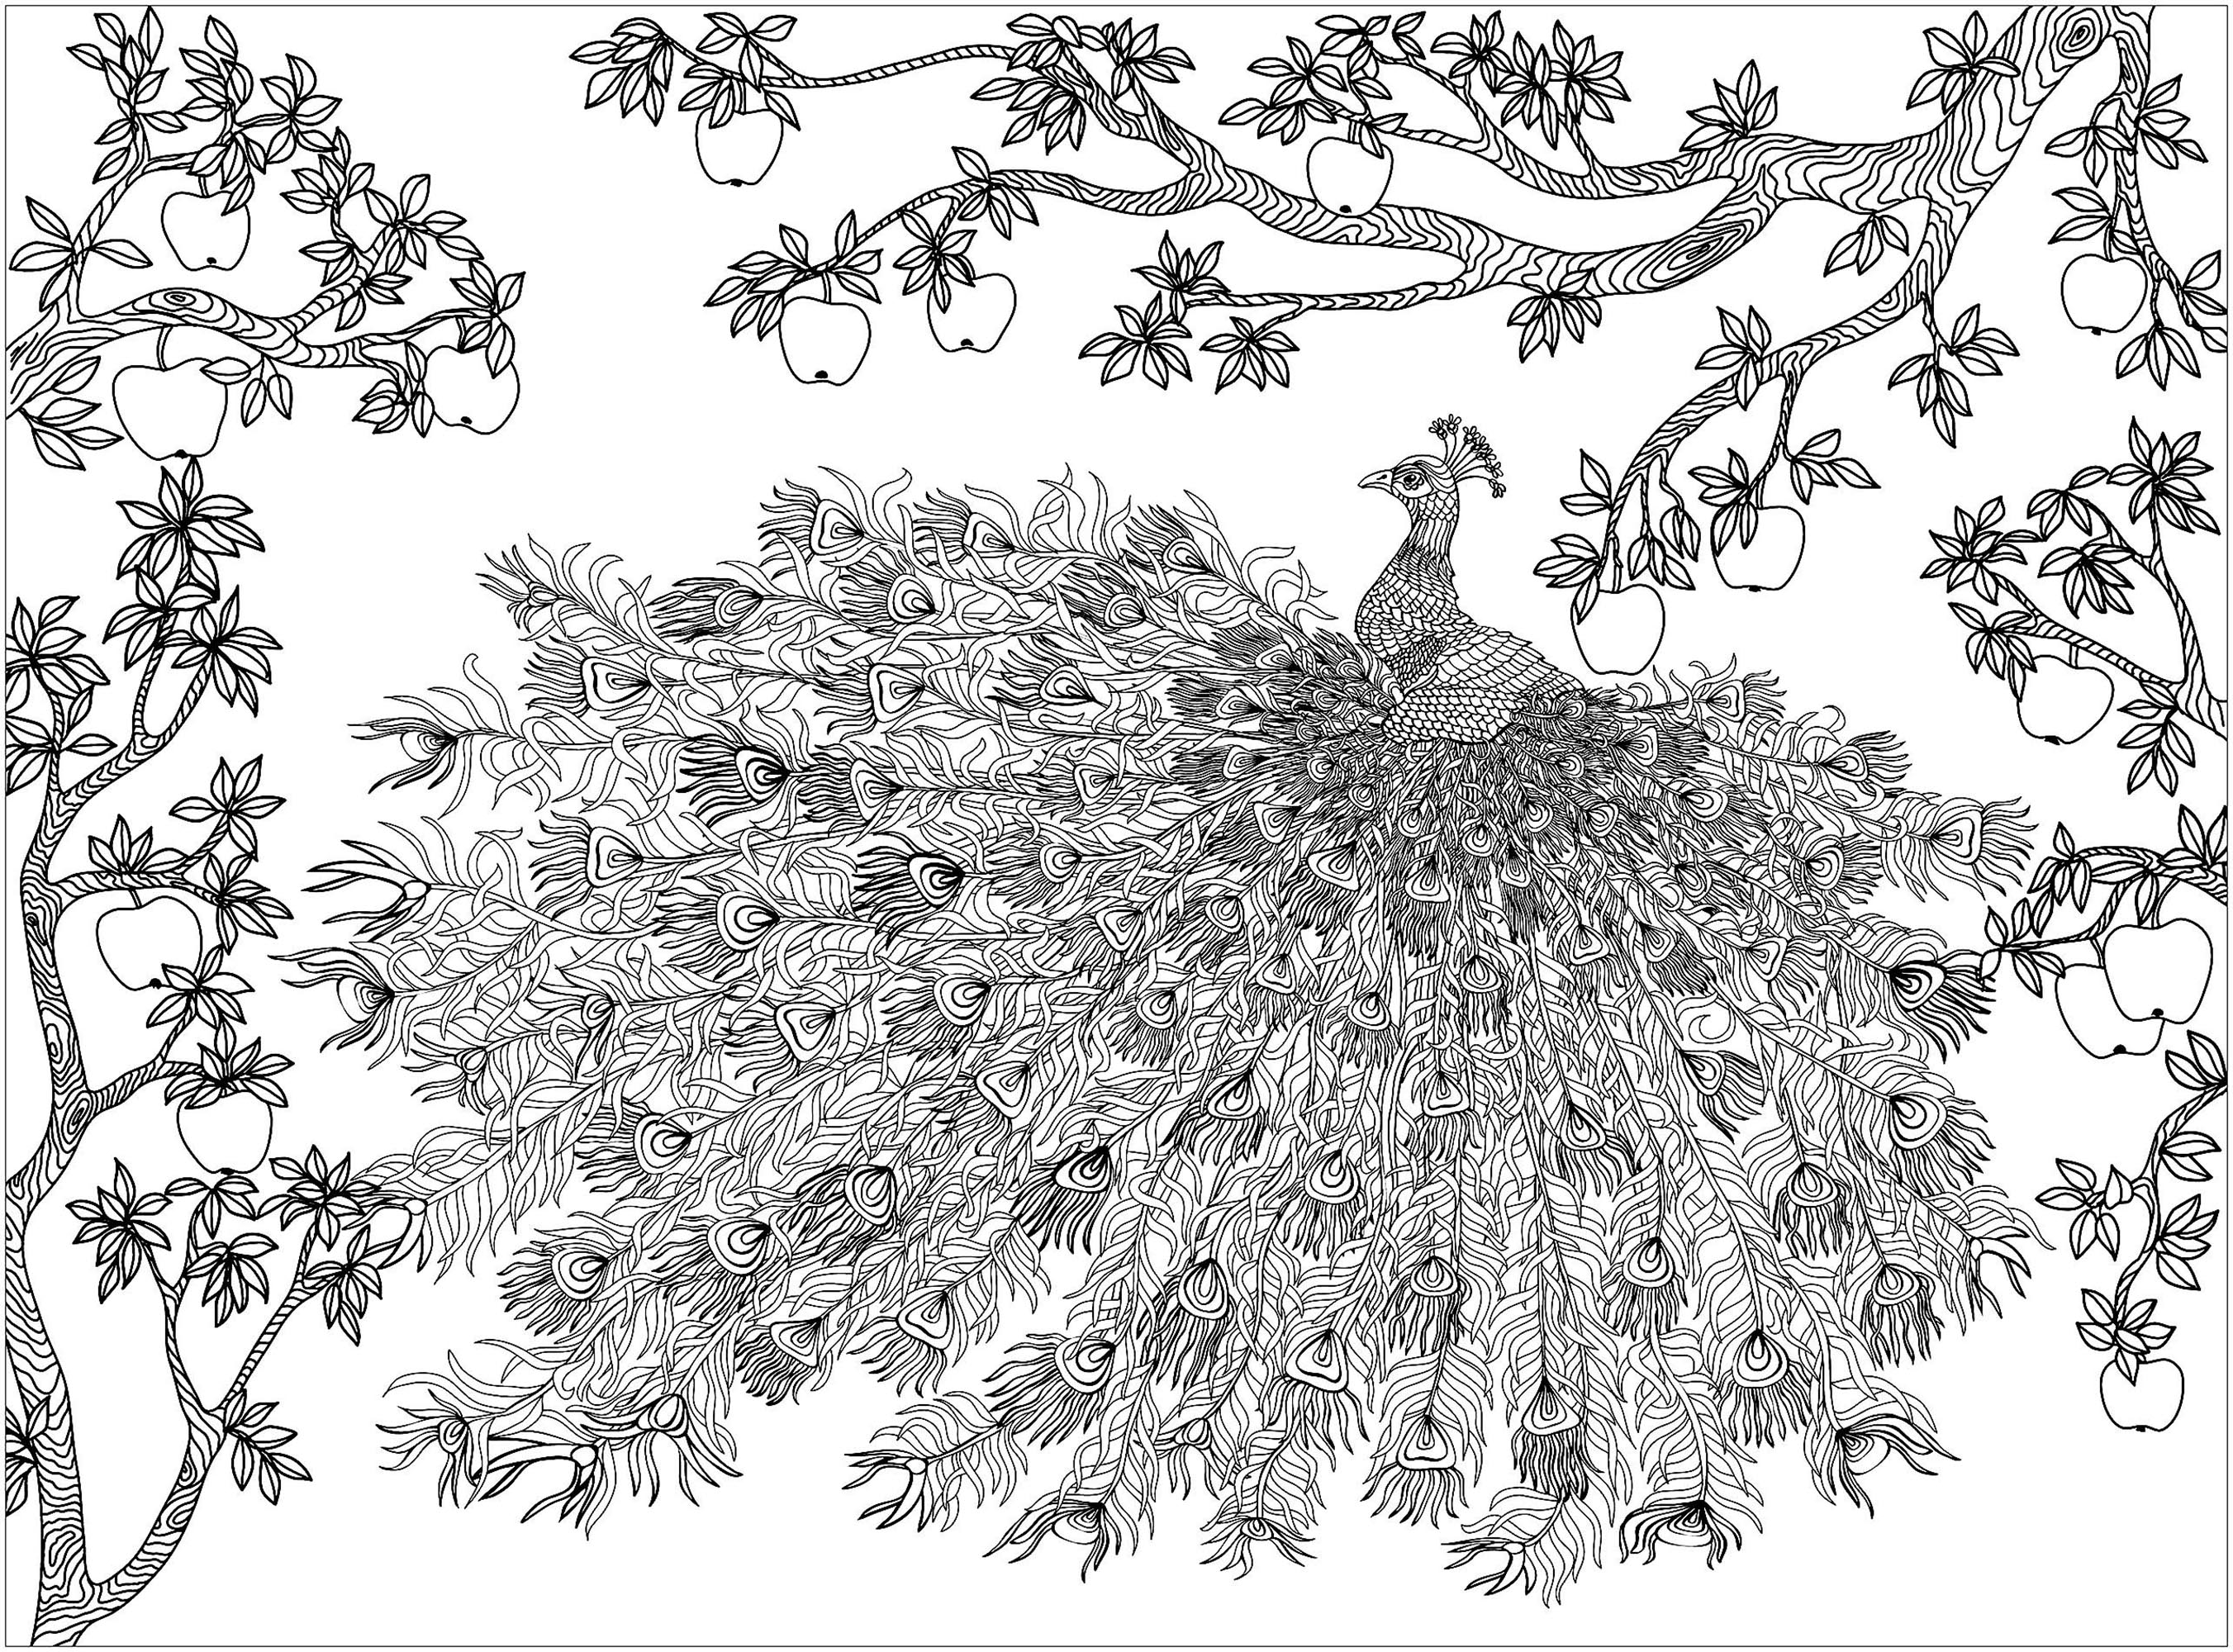 Macieira sobre um pavão e a sua maravilhosa plumagem, Fonte : 123rf   Artista : Vita Kosova